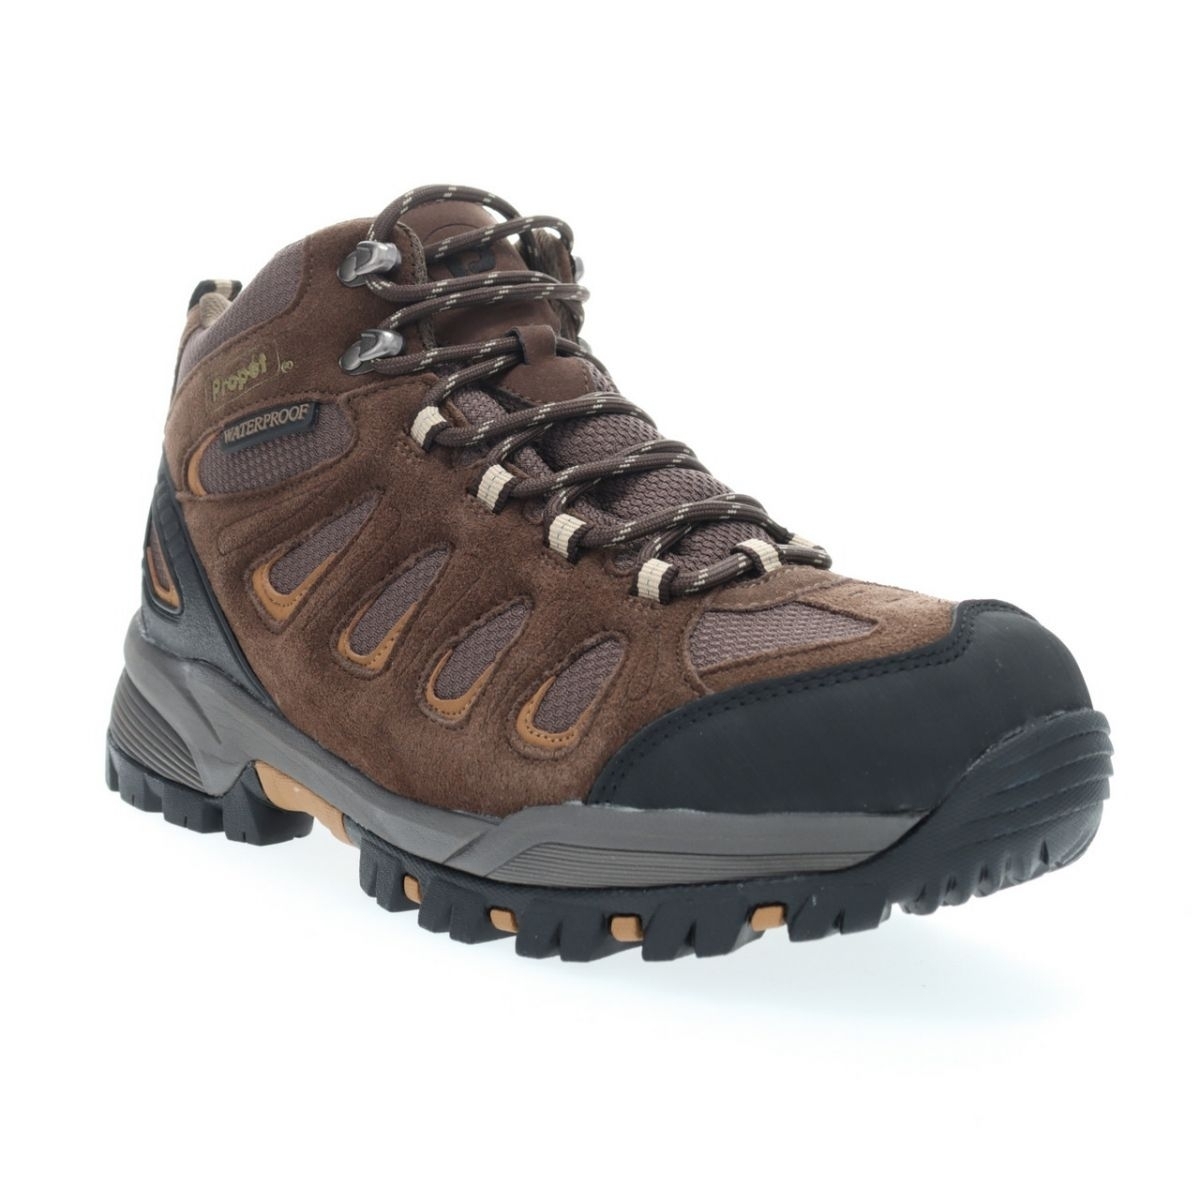 Propet Men's Ridge Walker Hiking Boot Brown - M3599BR 8 XX US Men BROWN - BROWN, 12 X-Wide